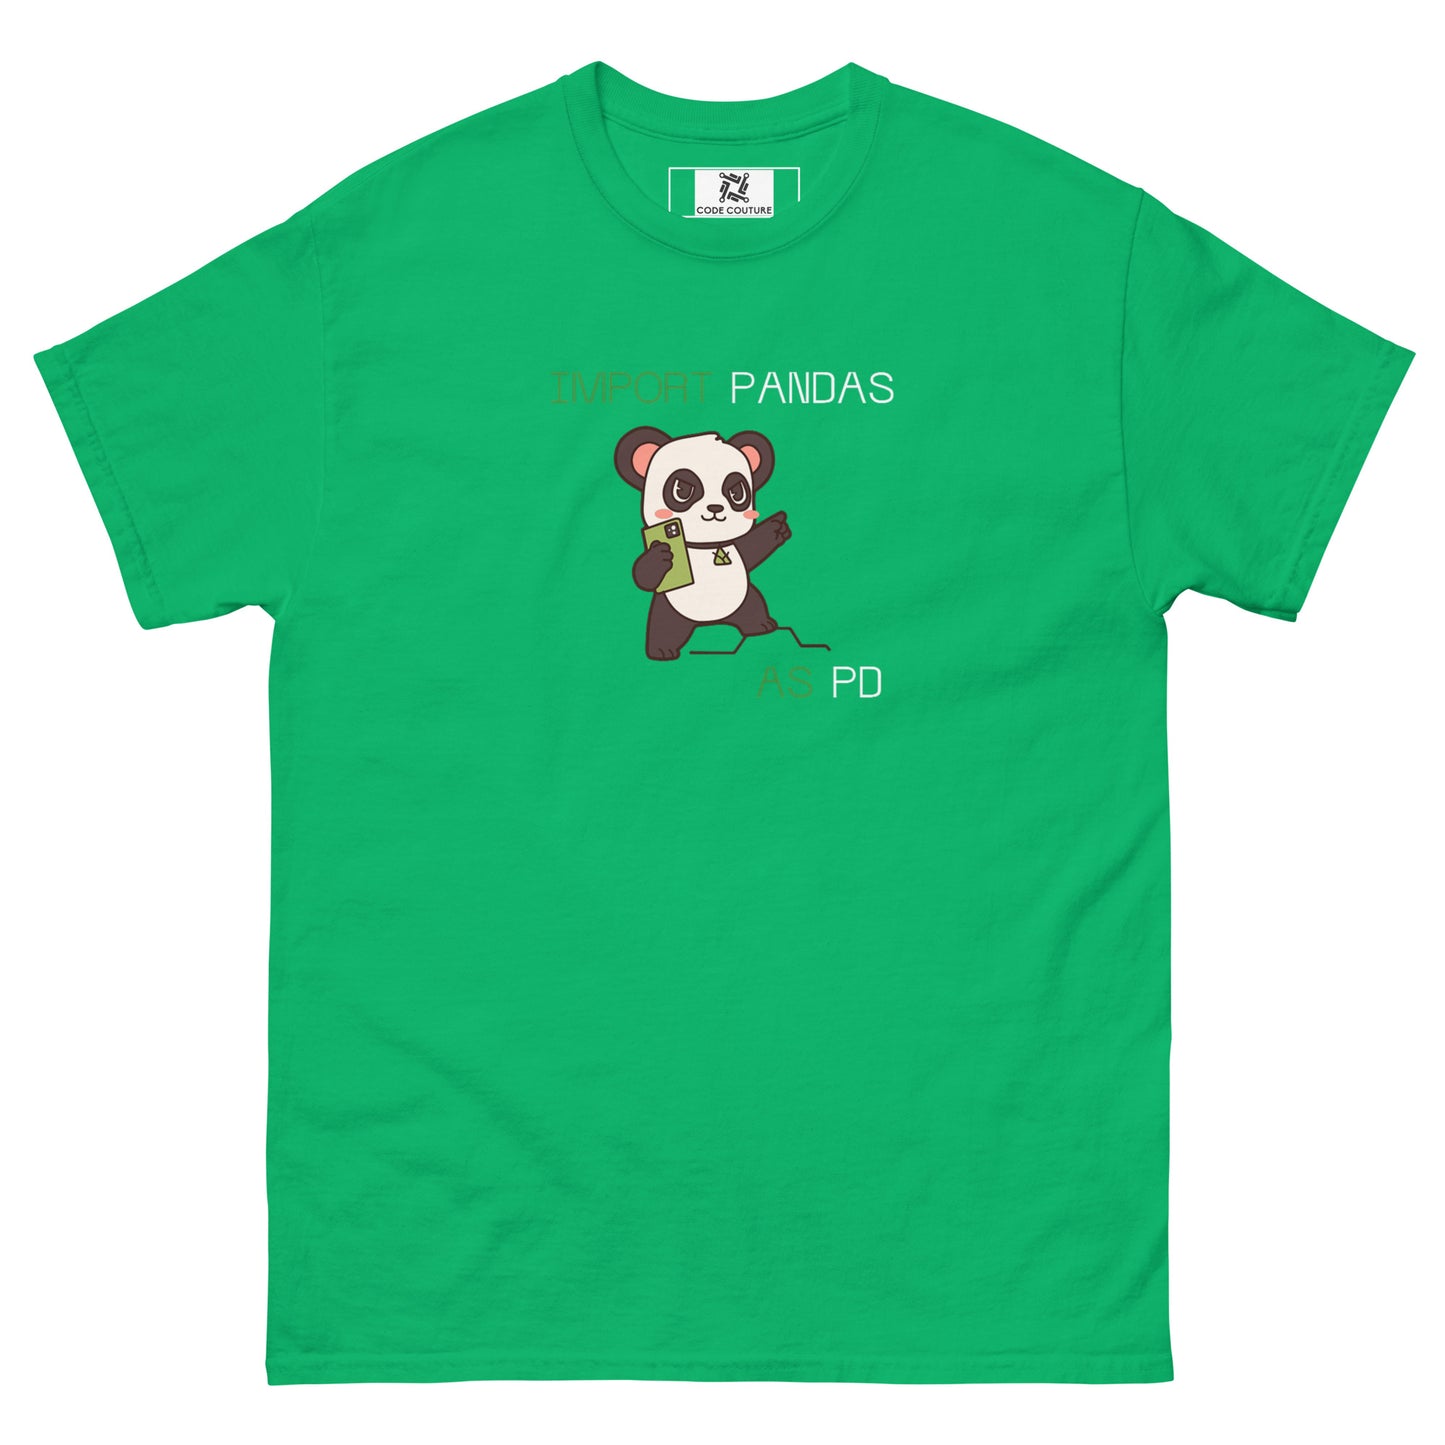 Pandas as PD